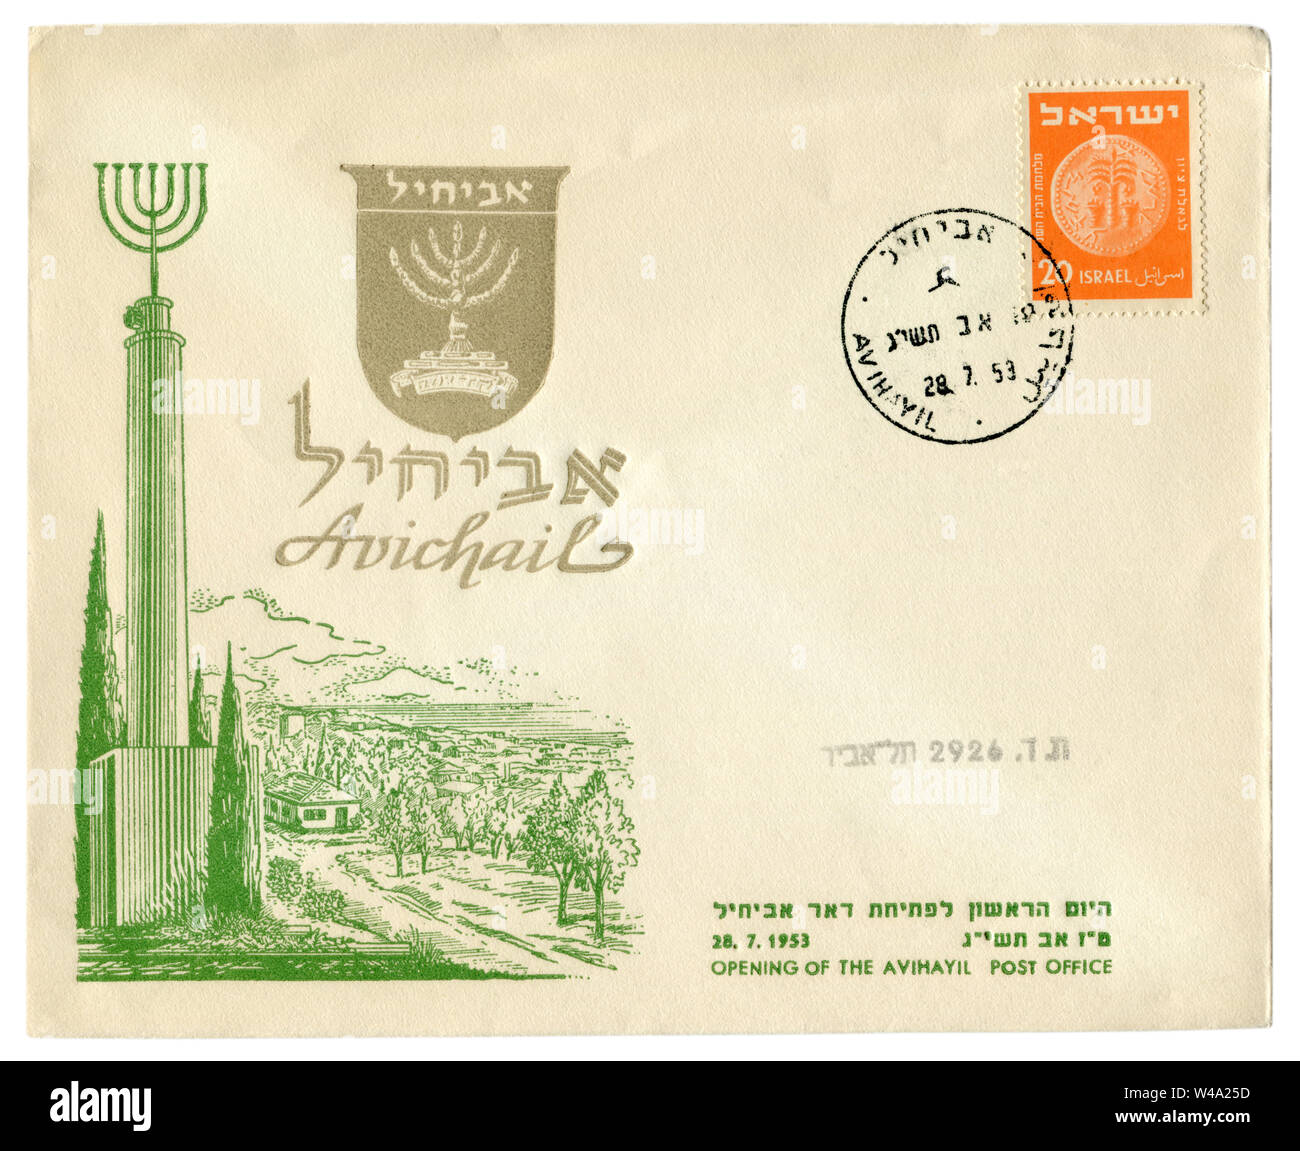 Avihayil, Israel - 28. Juli 1953: Israelische historische Umschlag: Abdeckung mit Gütesiegel Öffnen der Post, Moshav stadt mit kleinen Häusern umgeben von Bäumen Stockfoto